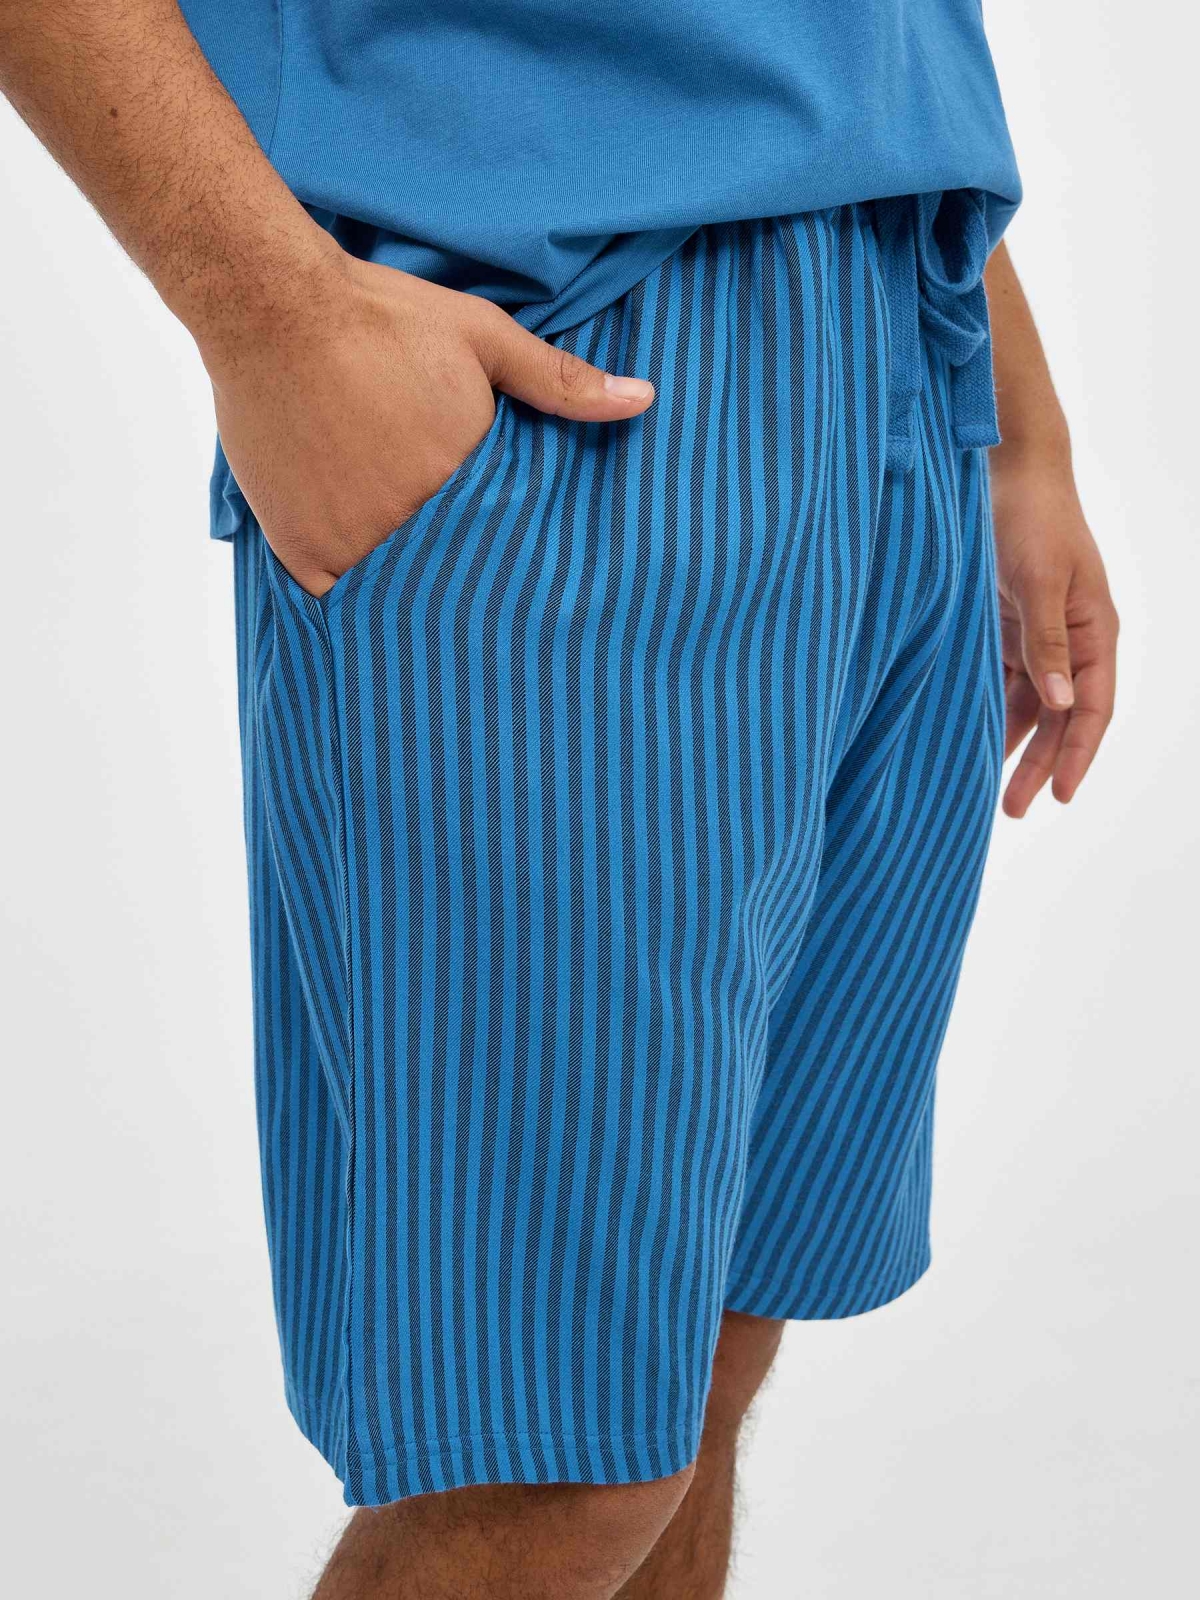 Men's pajamas striped pants blue detail view